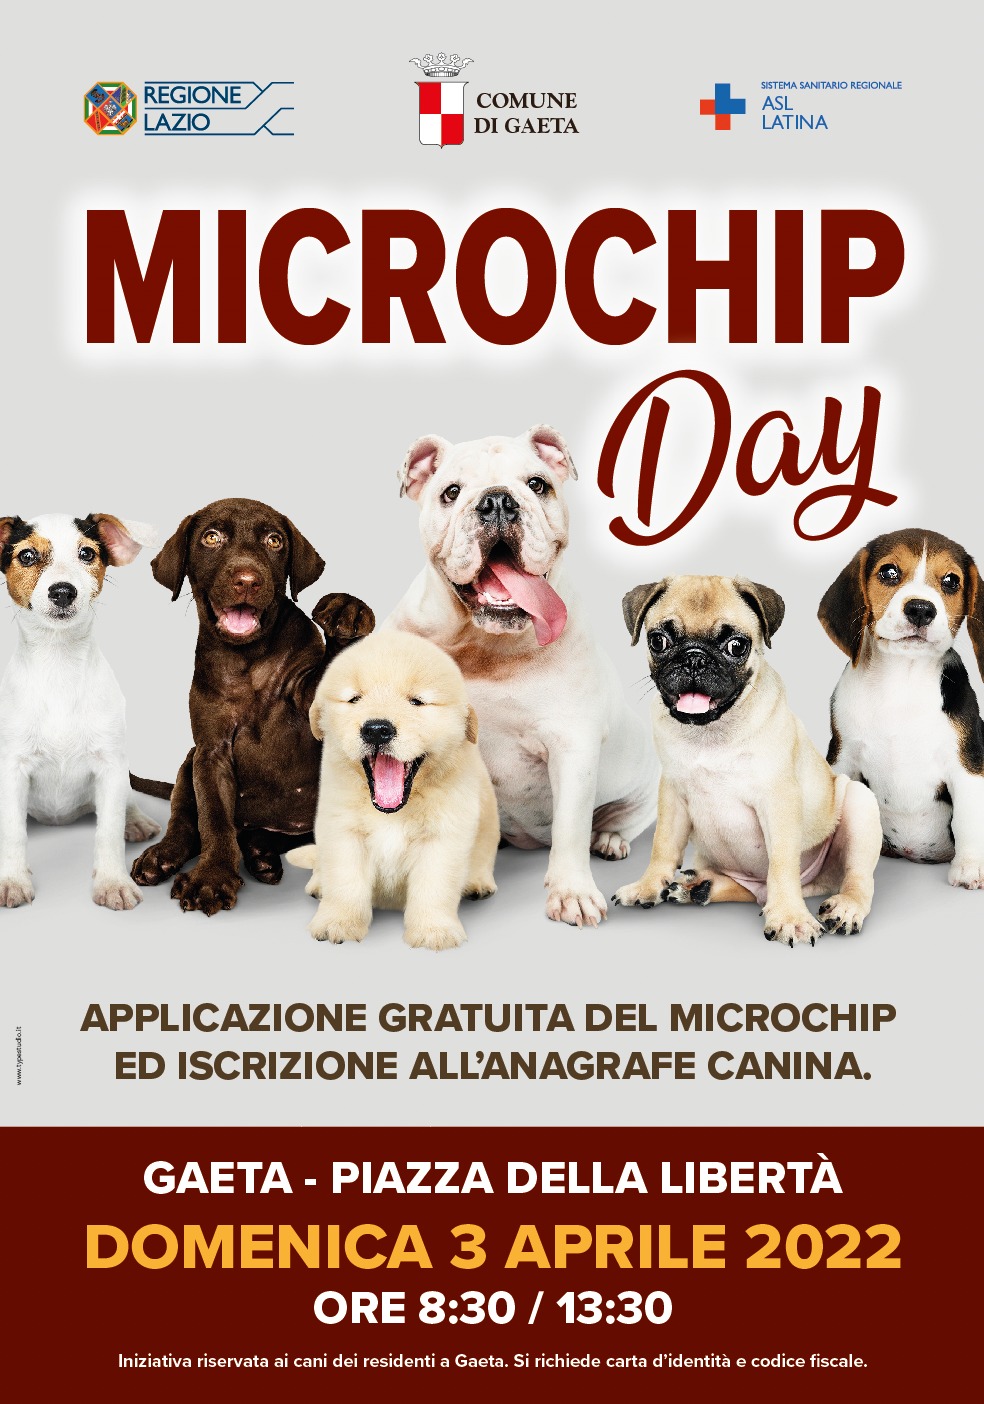 Microchip Day, domenica 3 aprile